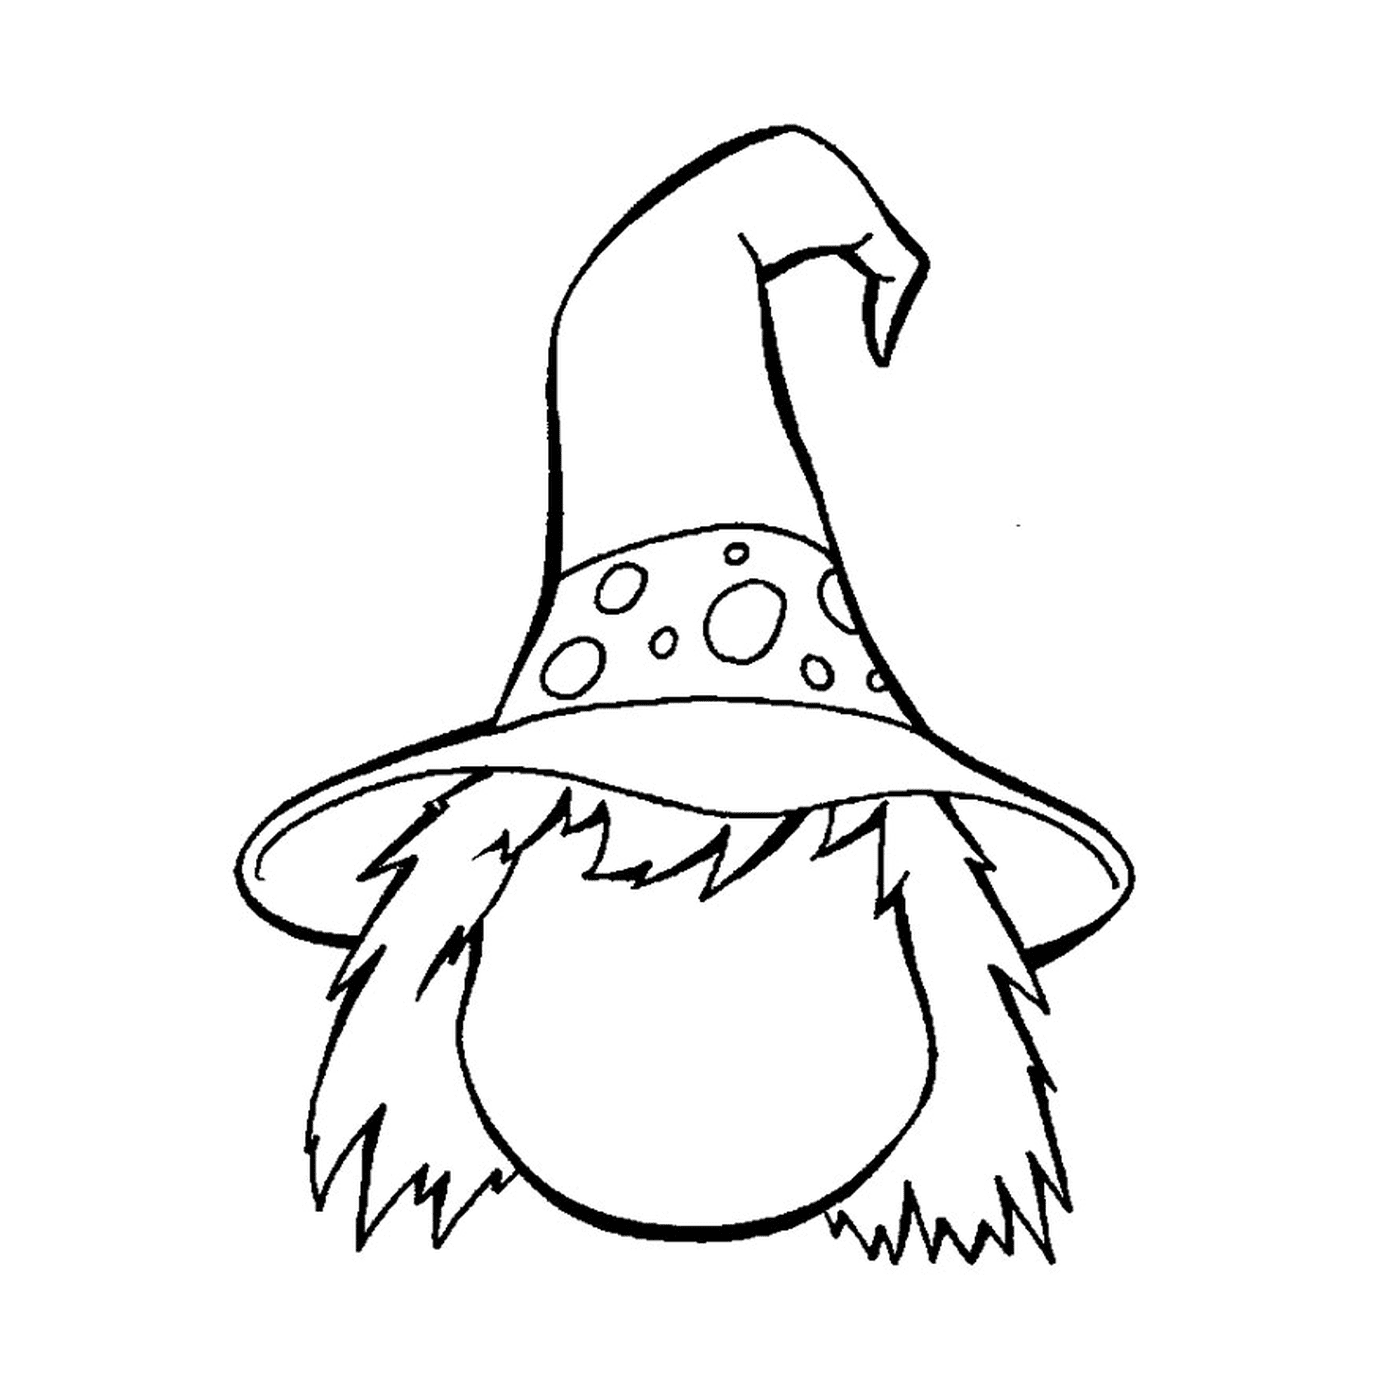  Gnome trägt einen Hut 